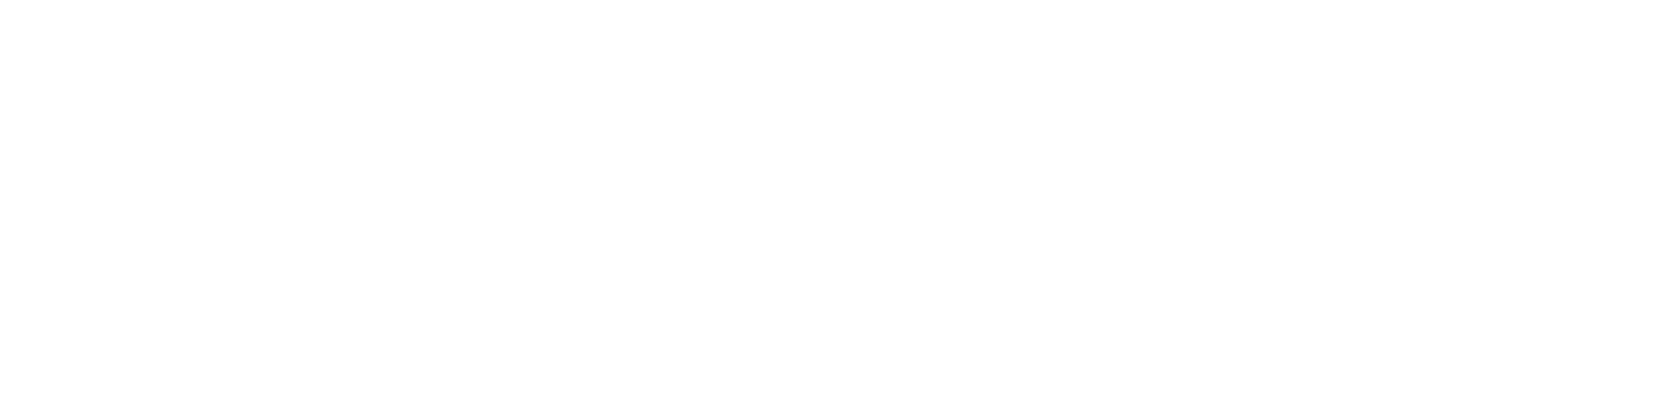 DePaul University Center for Sales Leadership